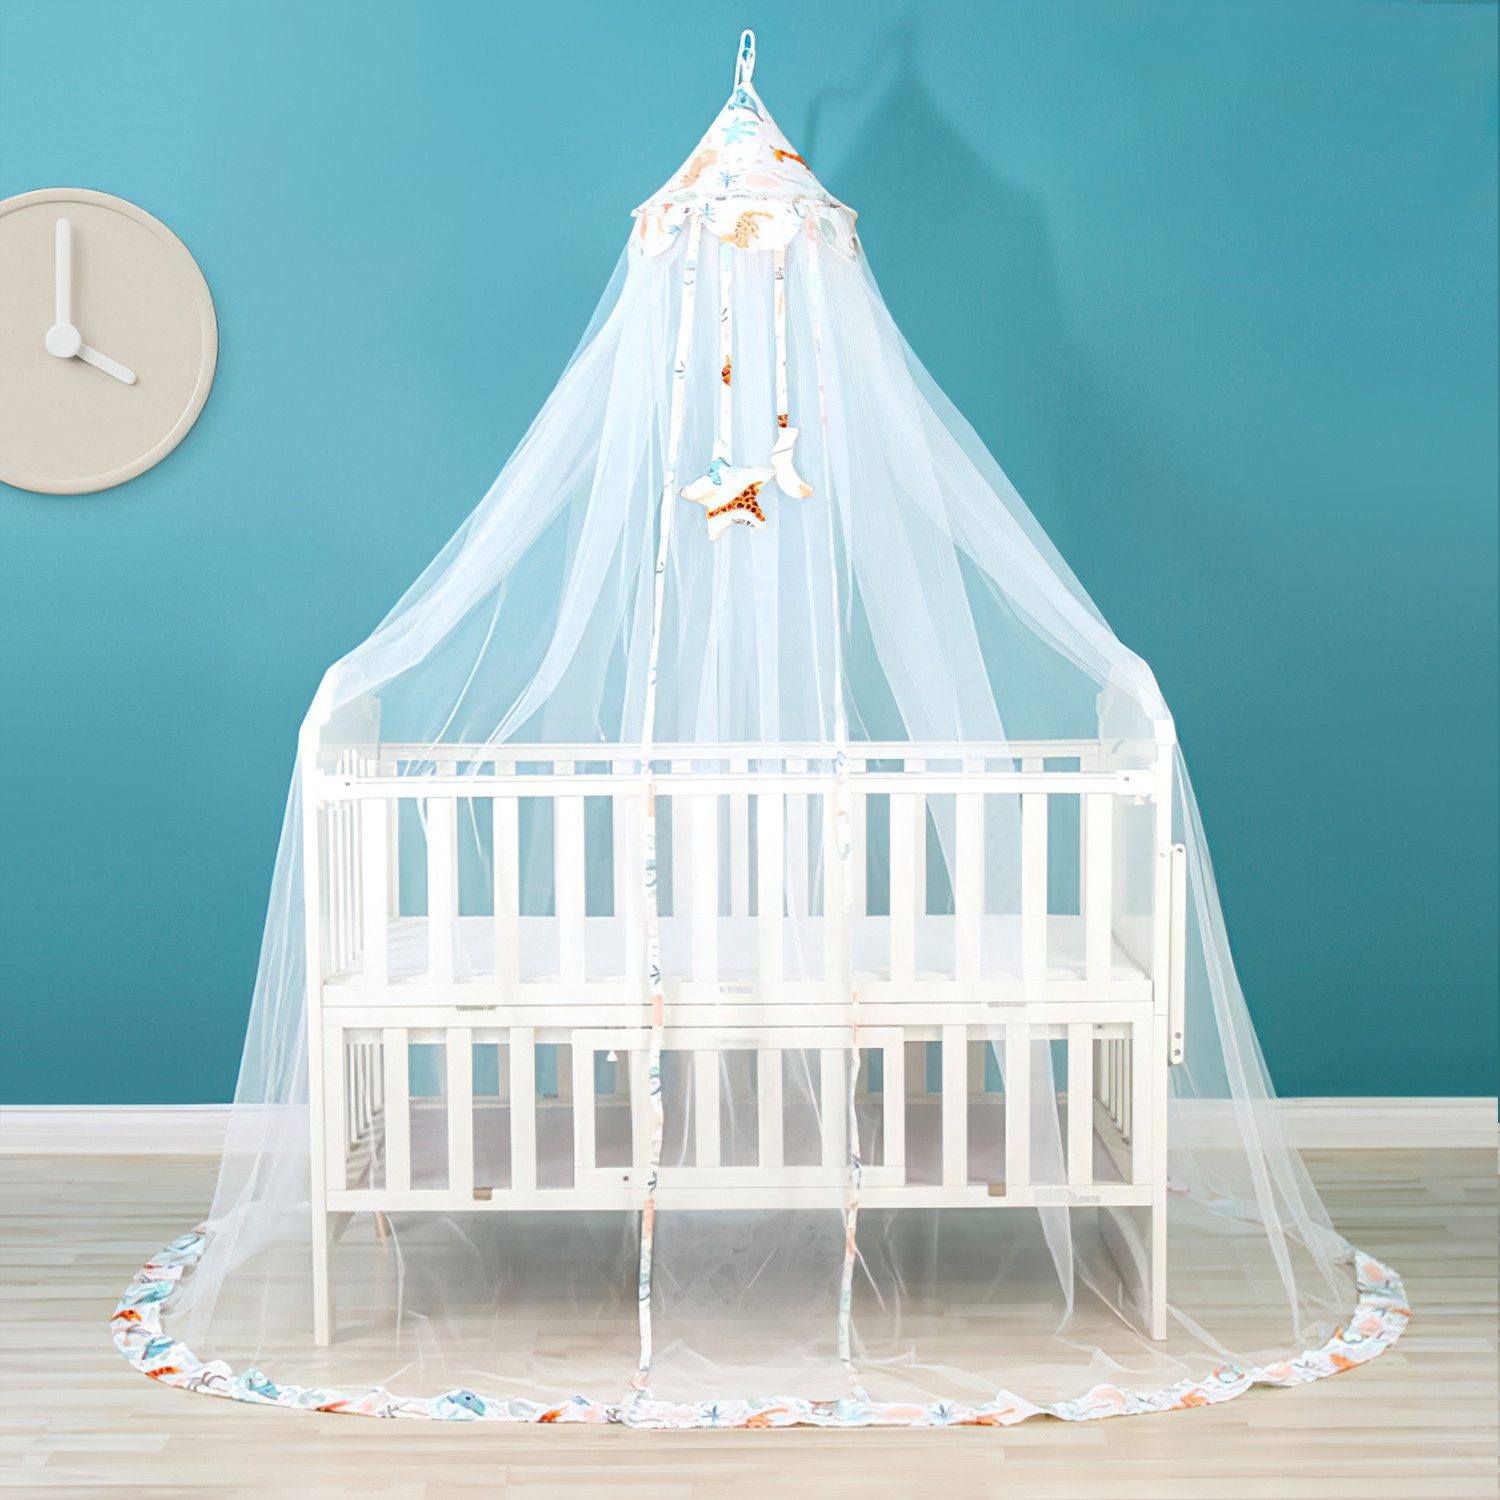 JOEAIS Moskitonetz Bett Kinder Mückennetz Himmelbett Vorhänge 35*210*600cm, für Kinderbetten Babybetten, Stubenwagen oder und Laufstall